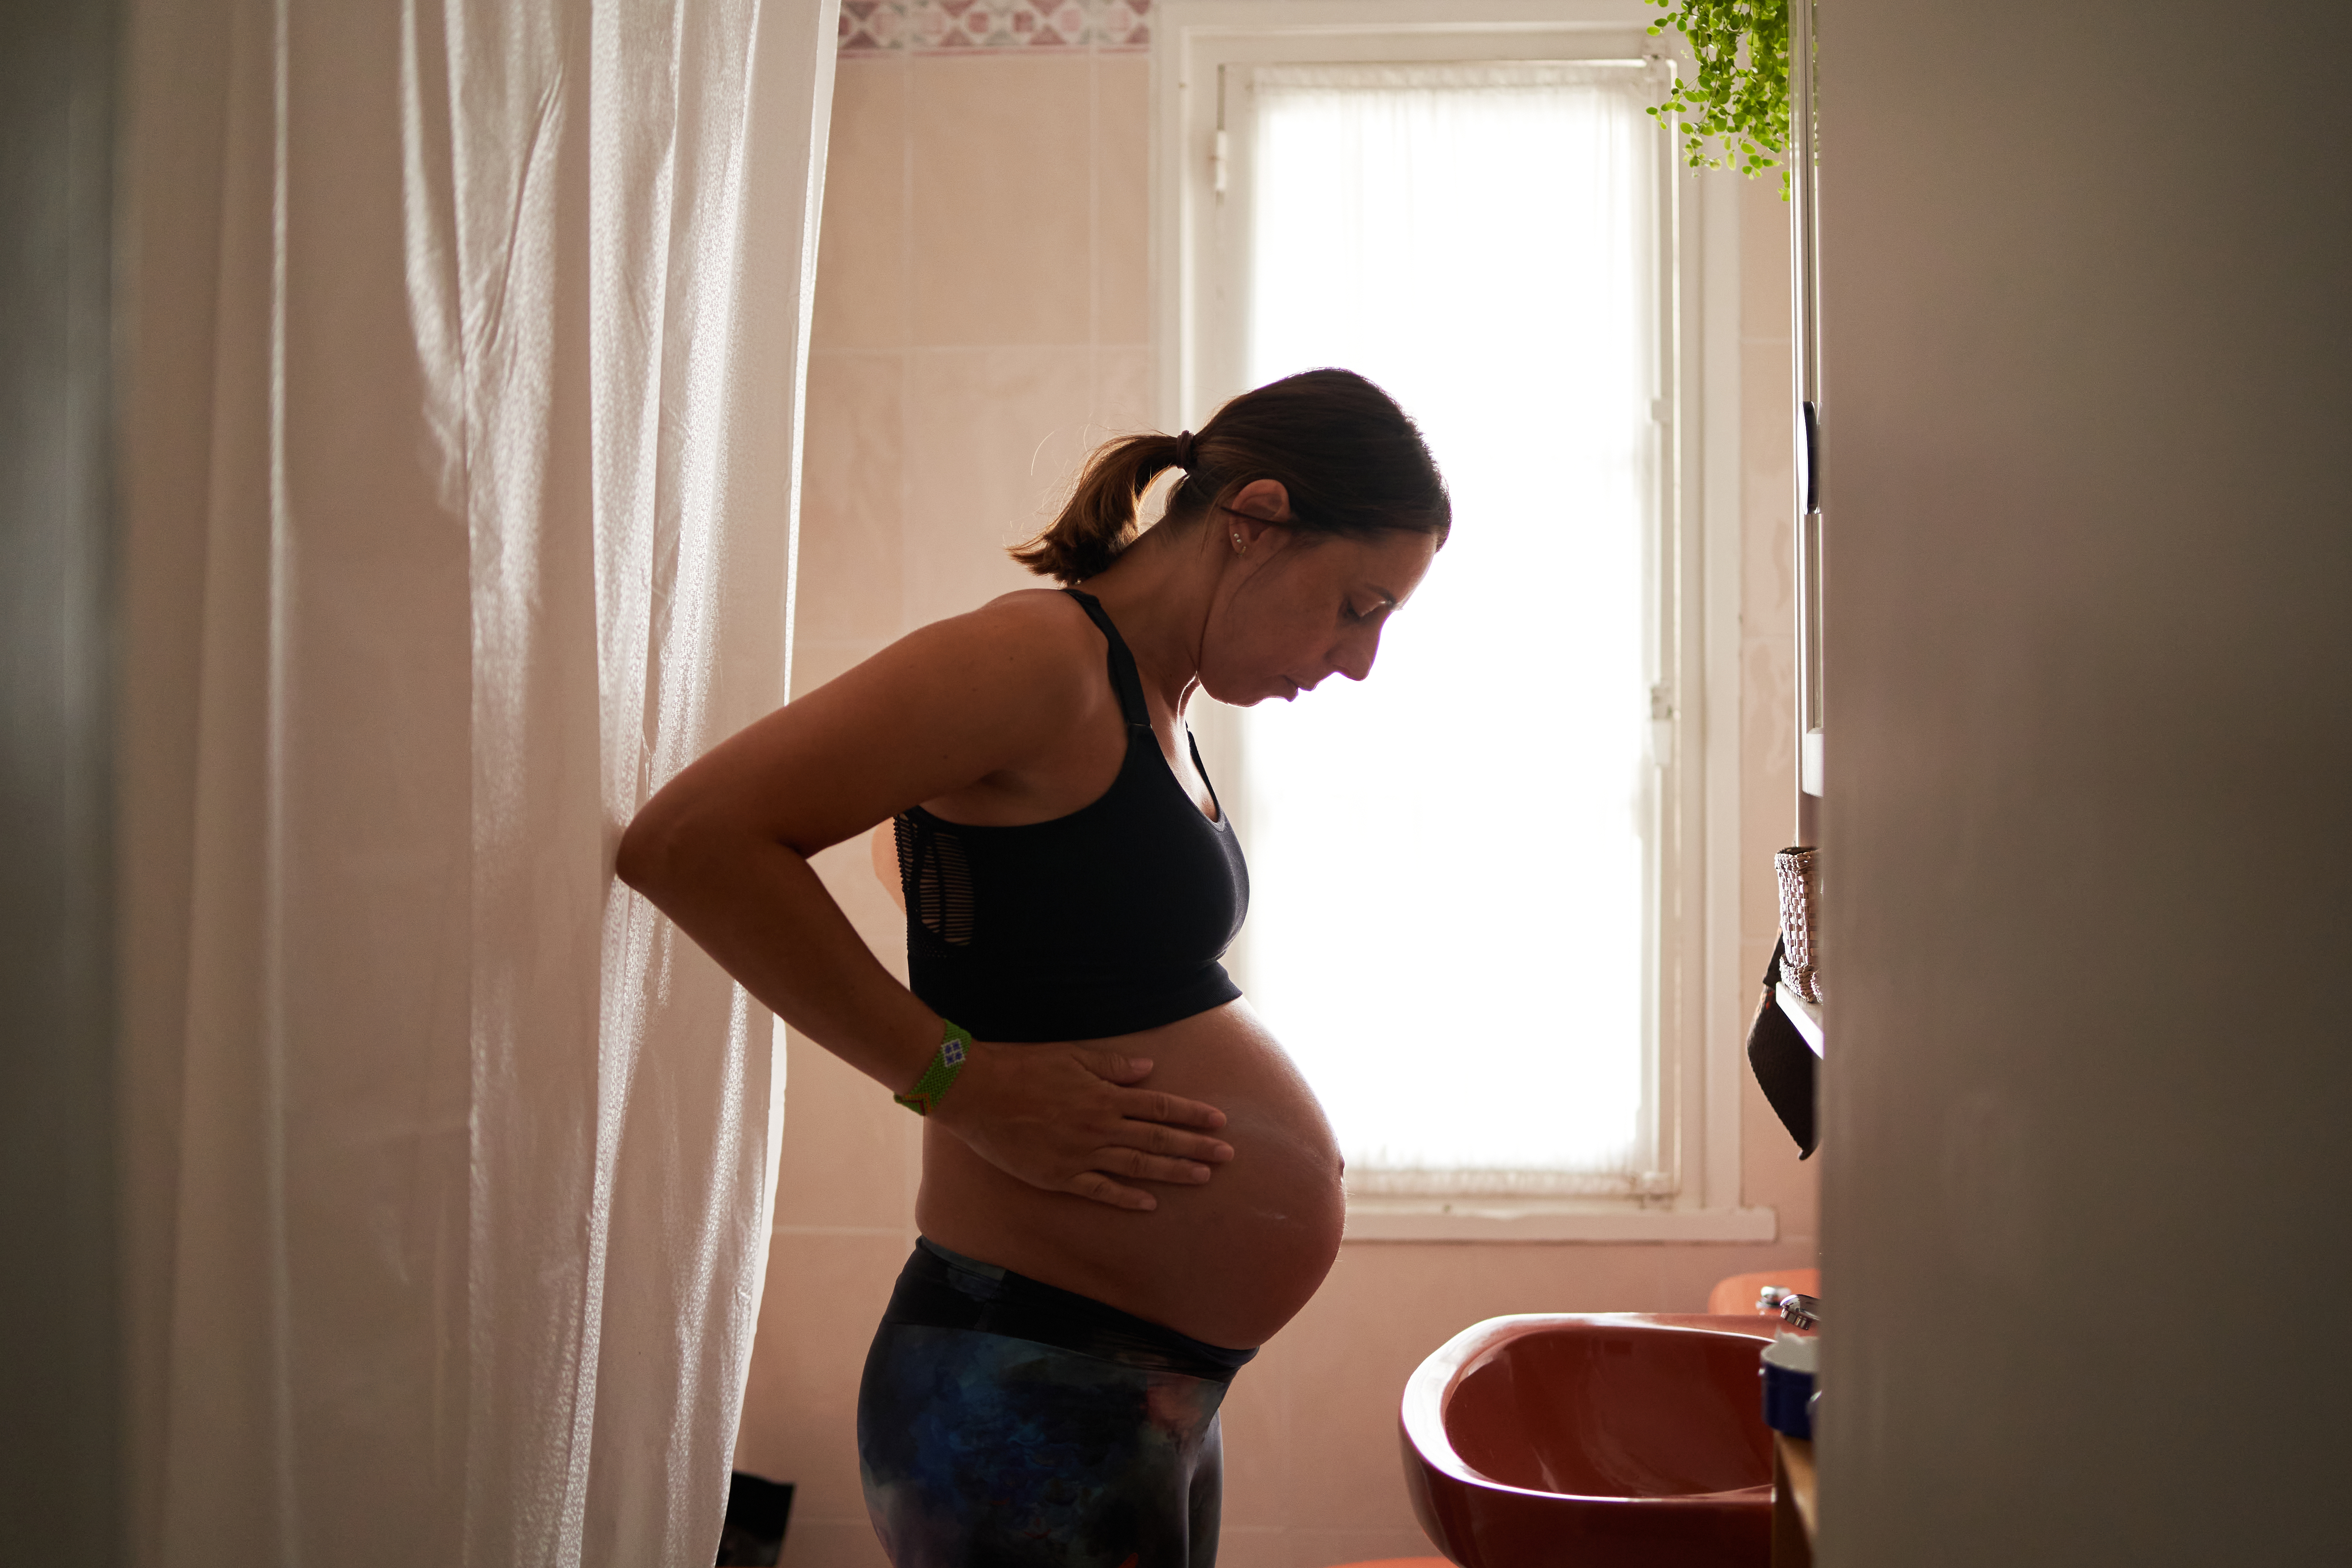 Une femme enceinte en train d'hydrater son ventre | Source : Getty Images